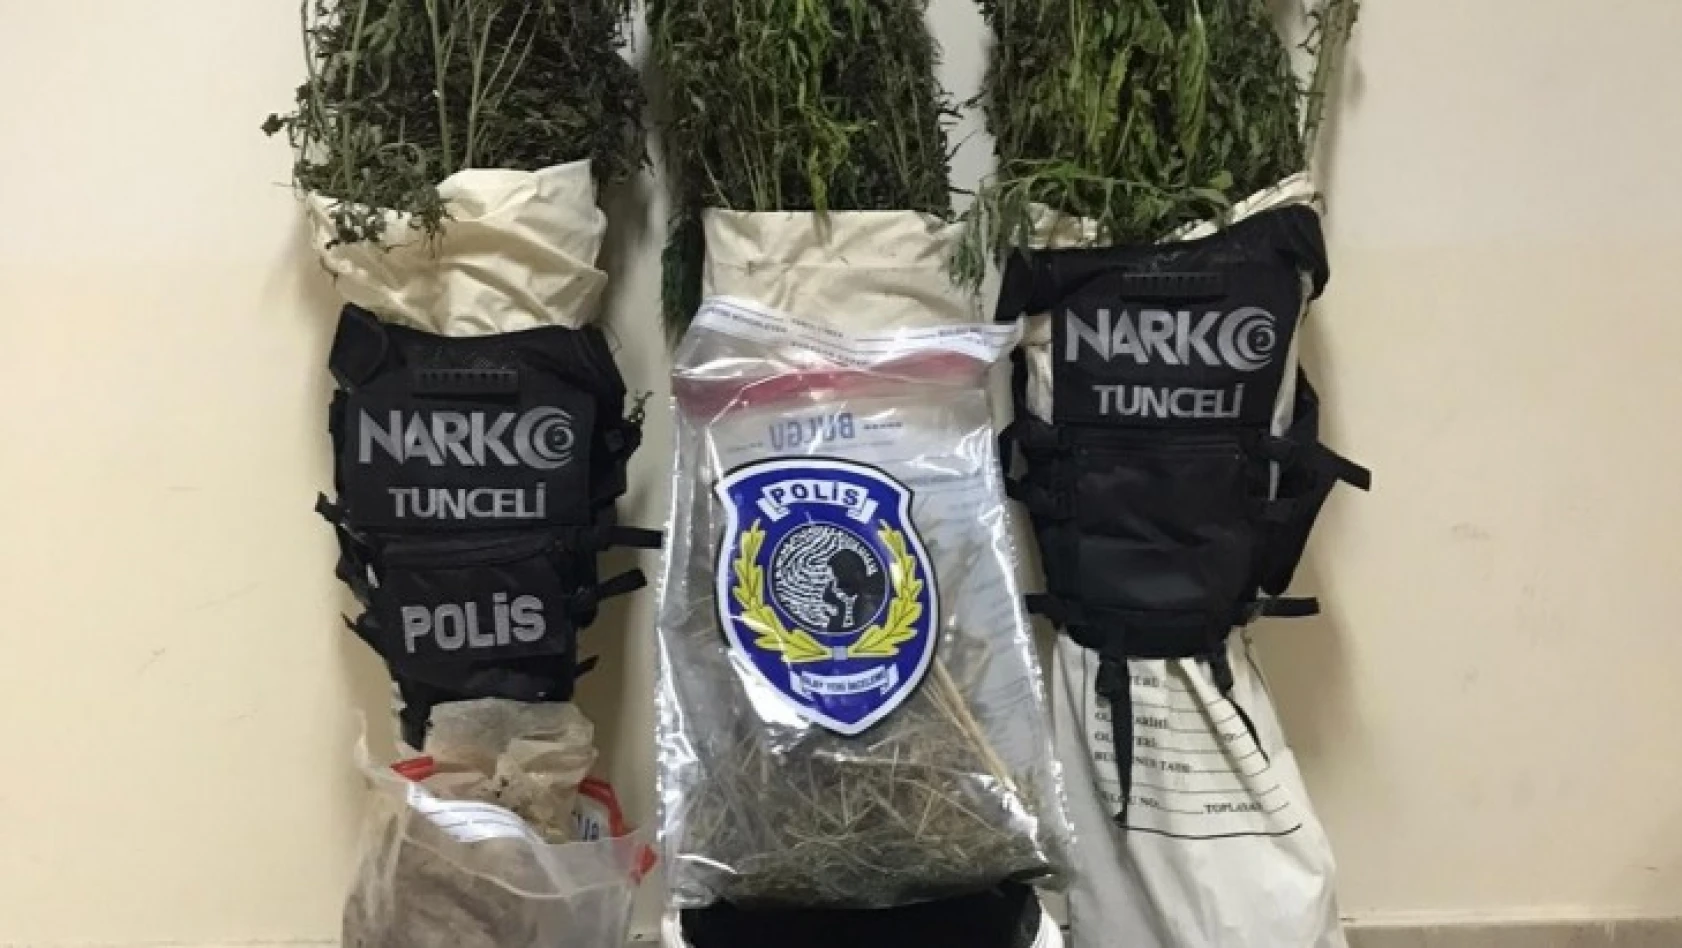 Tunceli'de uyuşturucu operasyonu: 1 kişi gözaltına alındı